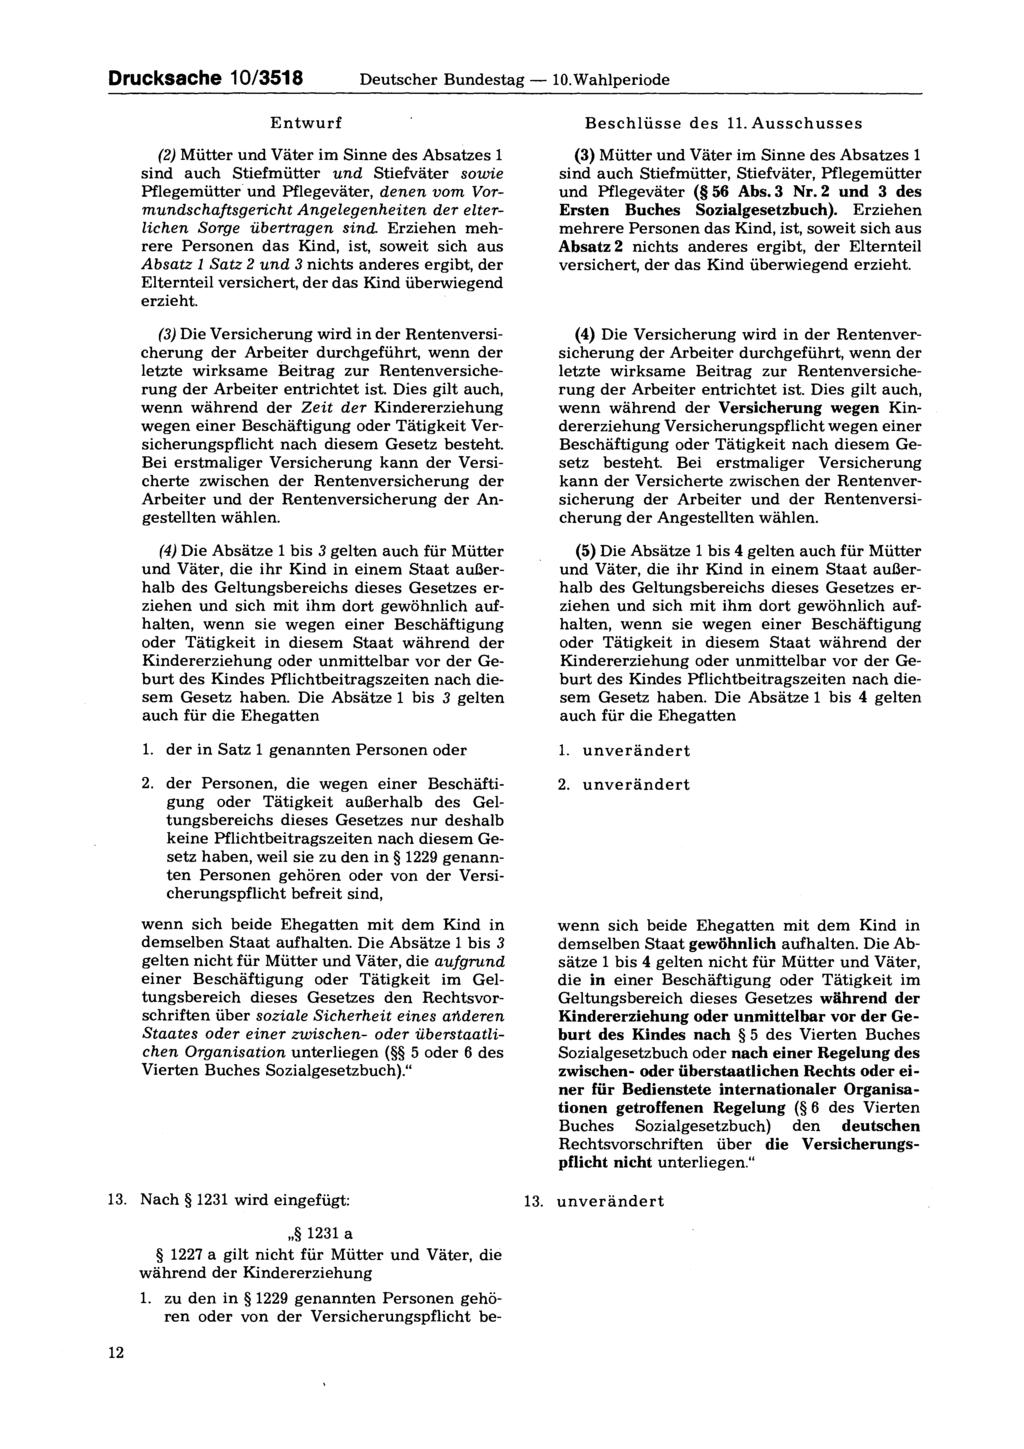 Drucksache 10/3518 Deutscher Bundestag 10.